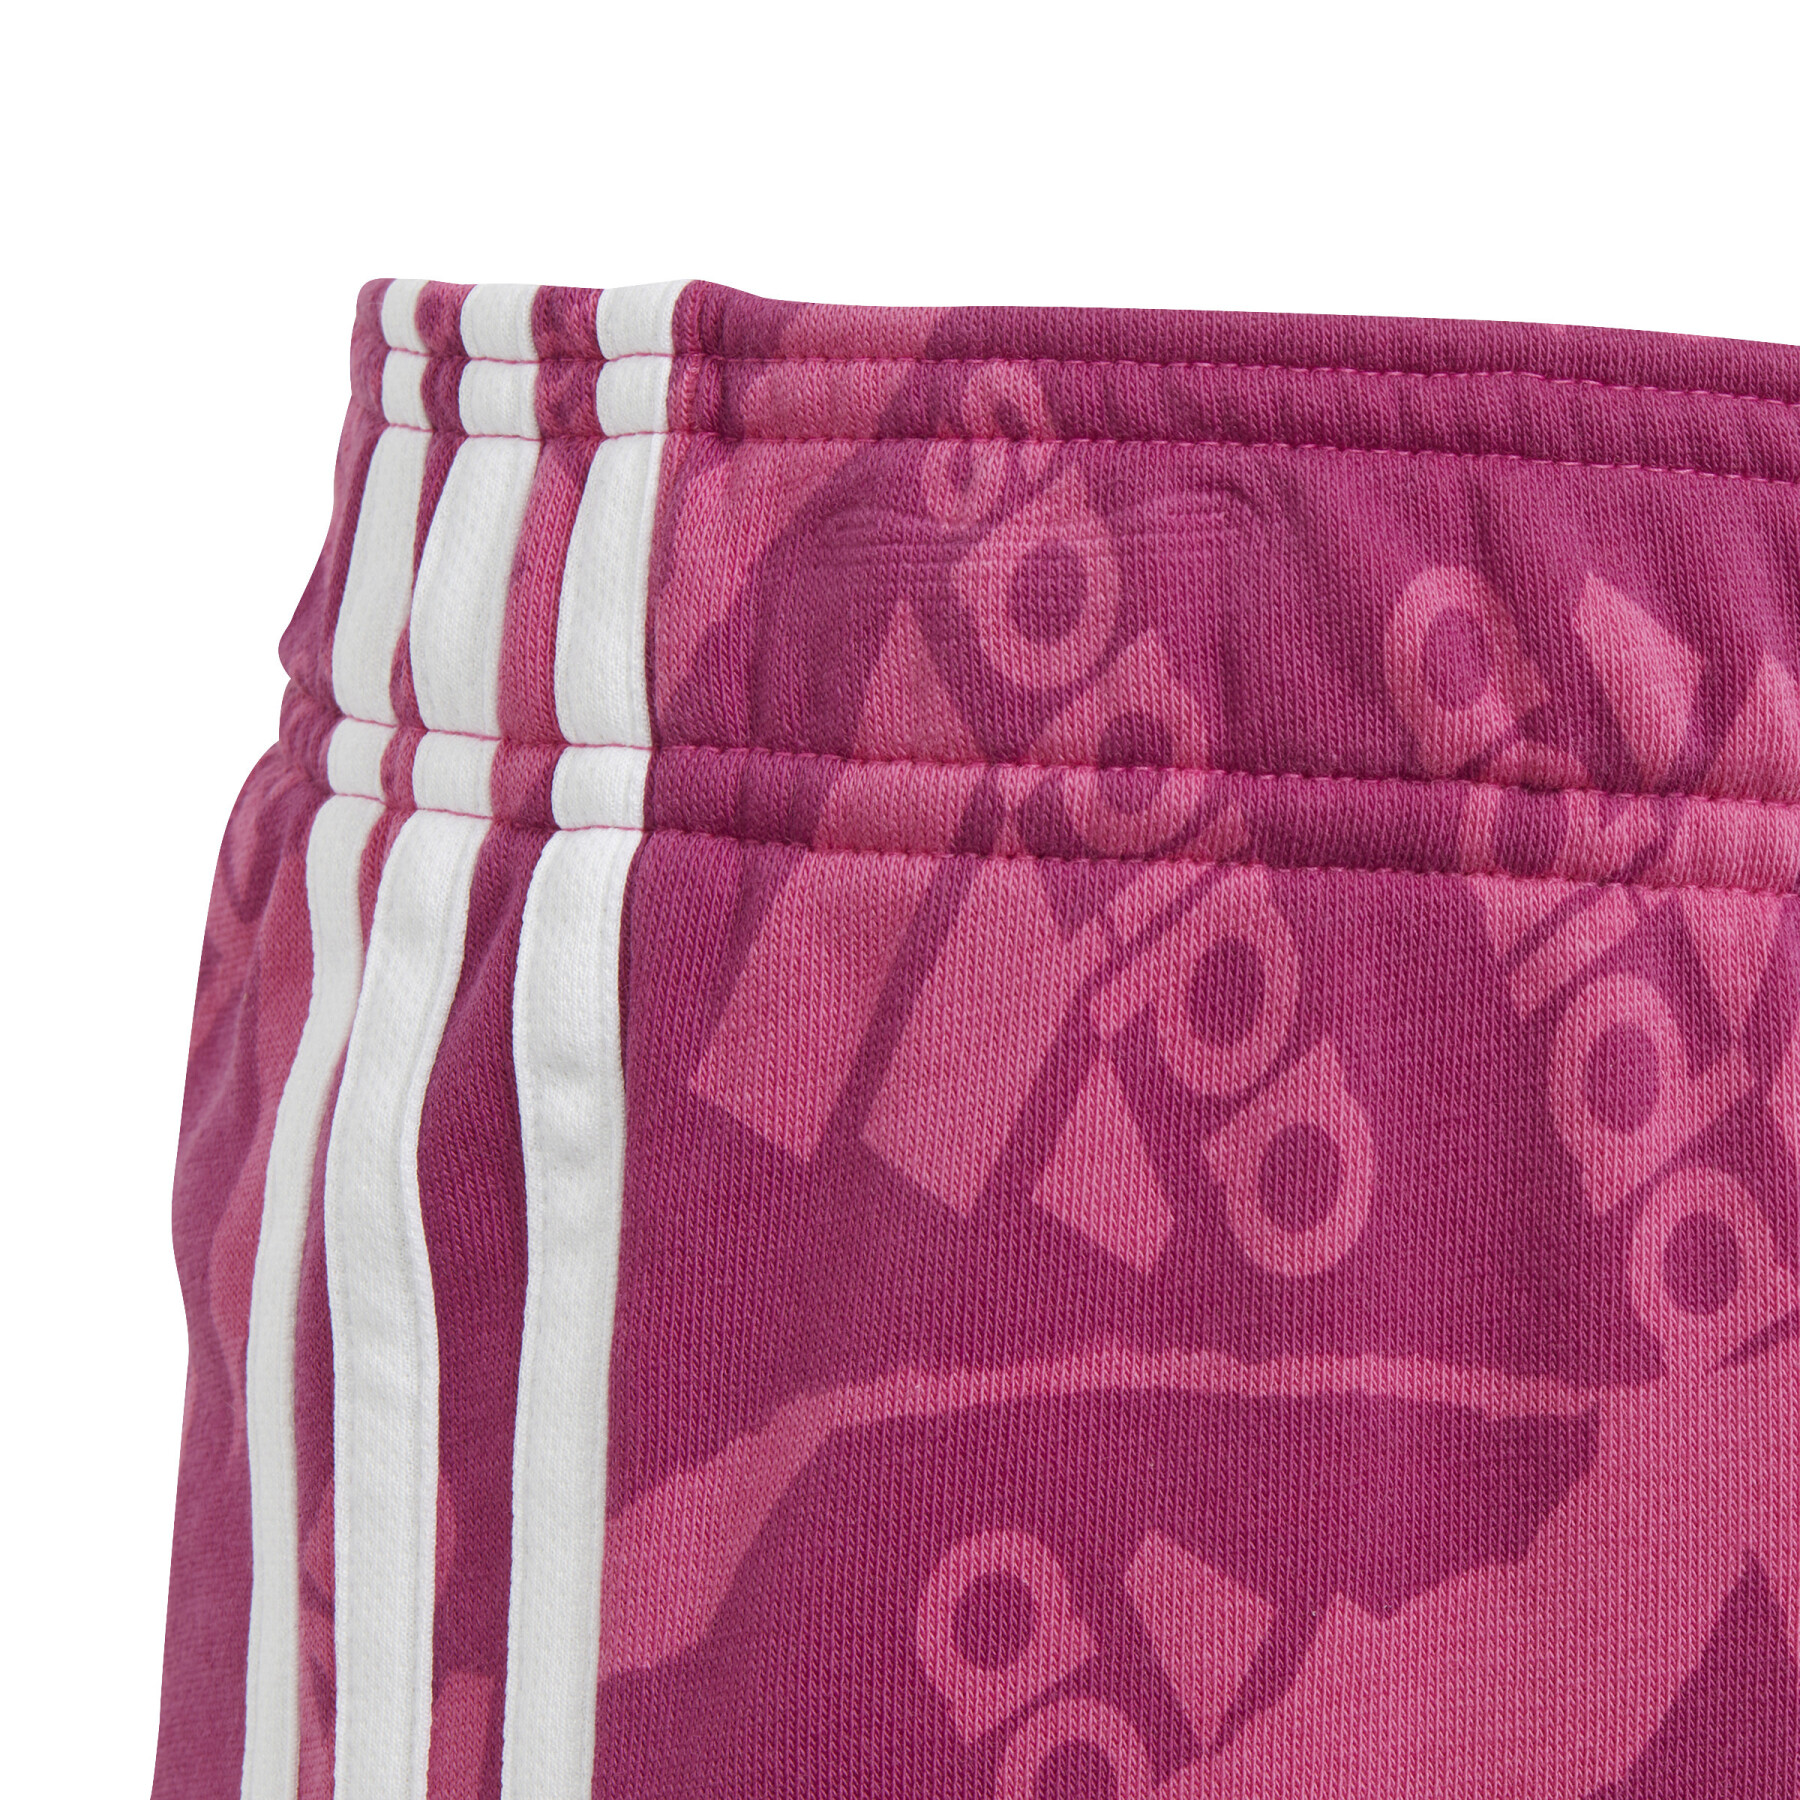 Pantaloncini con stampa per bambini Adidas Essentials